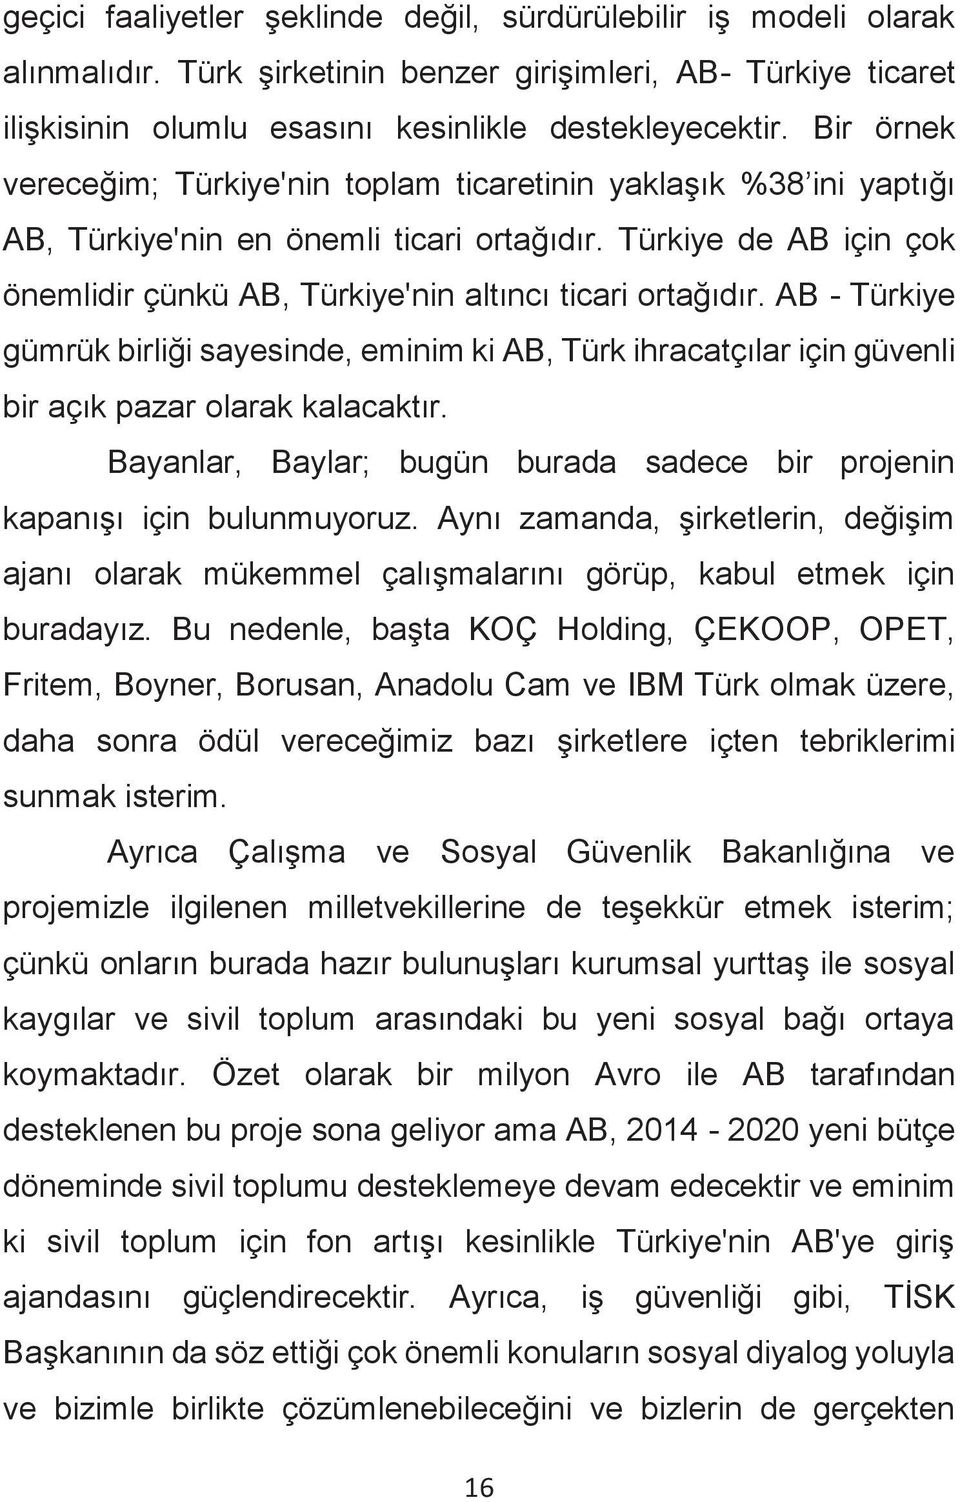 Türkiye de AB için çok önemlidir çünkü AB, Türkiye'nin altıncı ticari ortağıdır. AB - Türkiye gümrük birliği sayesinde, eminim ki AB, Türk ihracatçılar için güvenli bir açık pazar olarak kalacaktır.